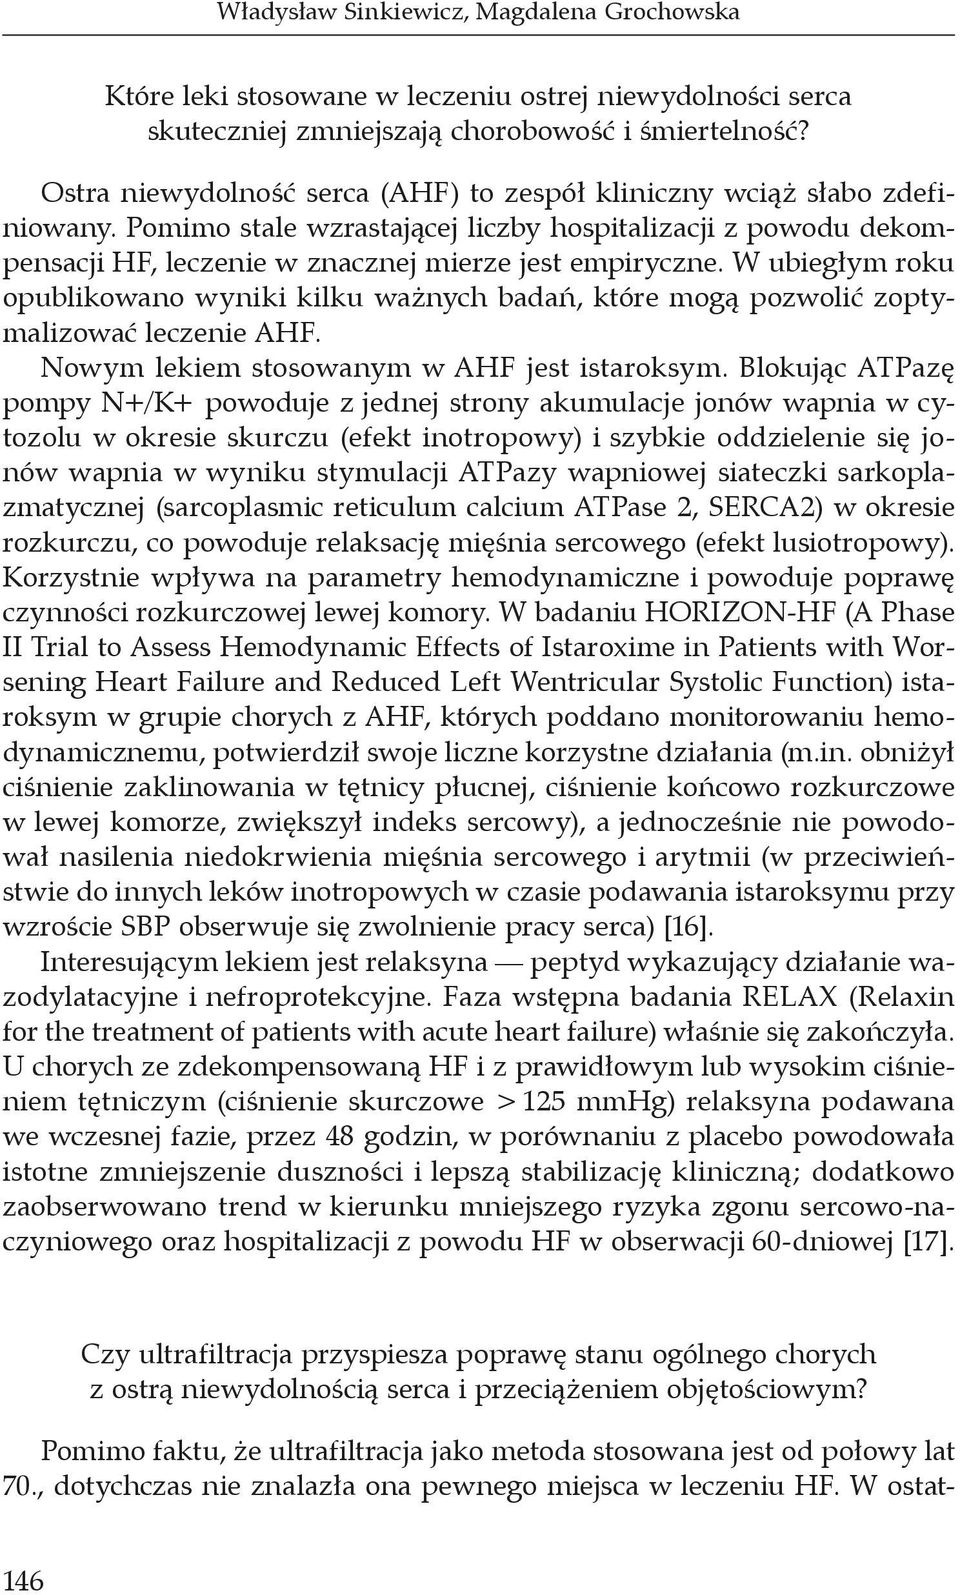 W ubiegłym roku opublikowano wyniki kilku ważnych badań, które mogą pozwolić zoptymalizować leczenie AHF. Nowym lekiem stosowanym w AHF jest istaroksym.